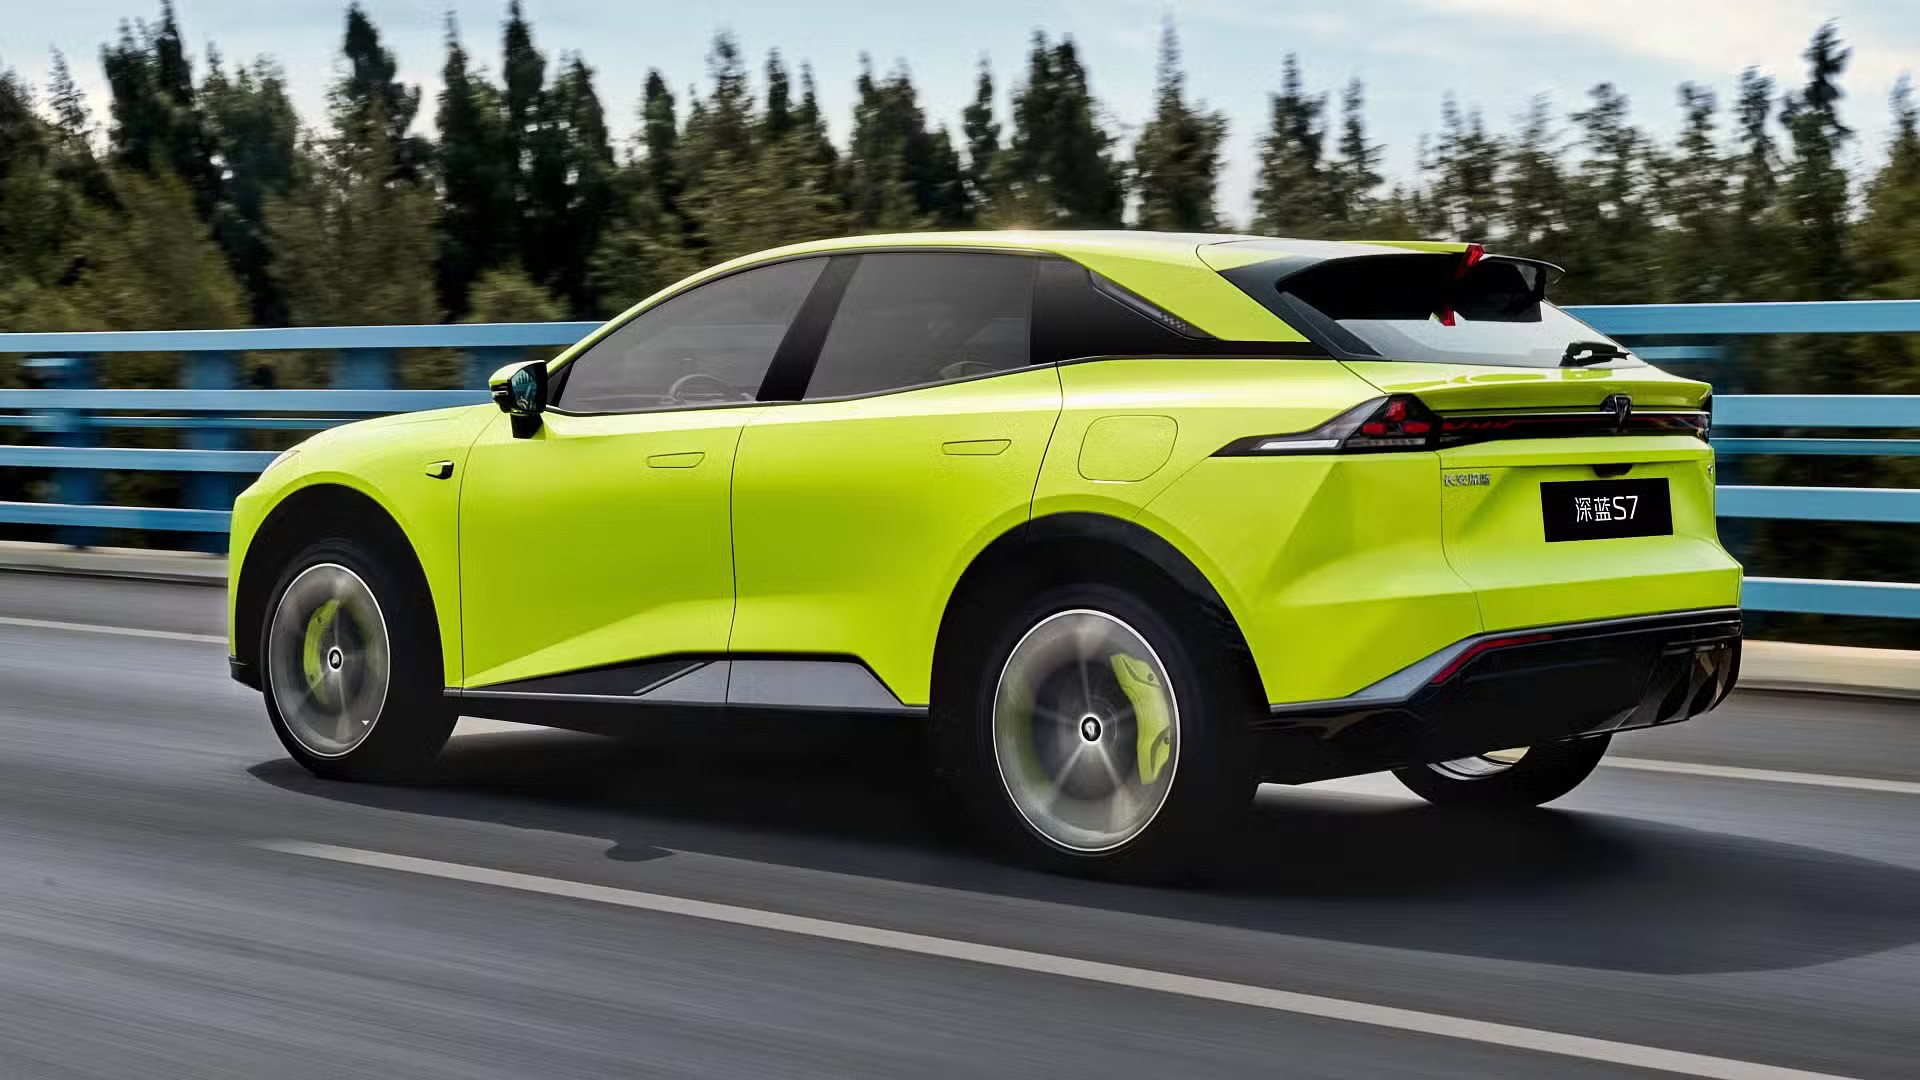 Ra mắt Mazda Arata Concept - SUV thuần điện ngang cỡ Mazda CX-5, chạy hơn 600km/sạc- Ảnh 7.